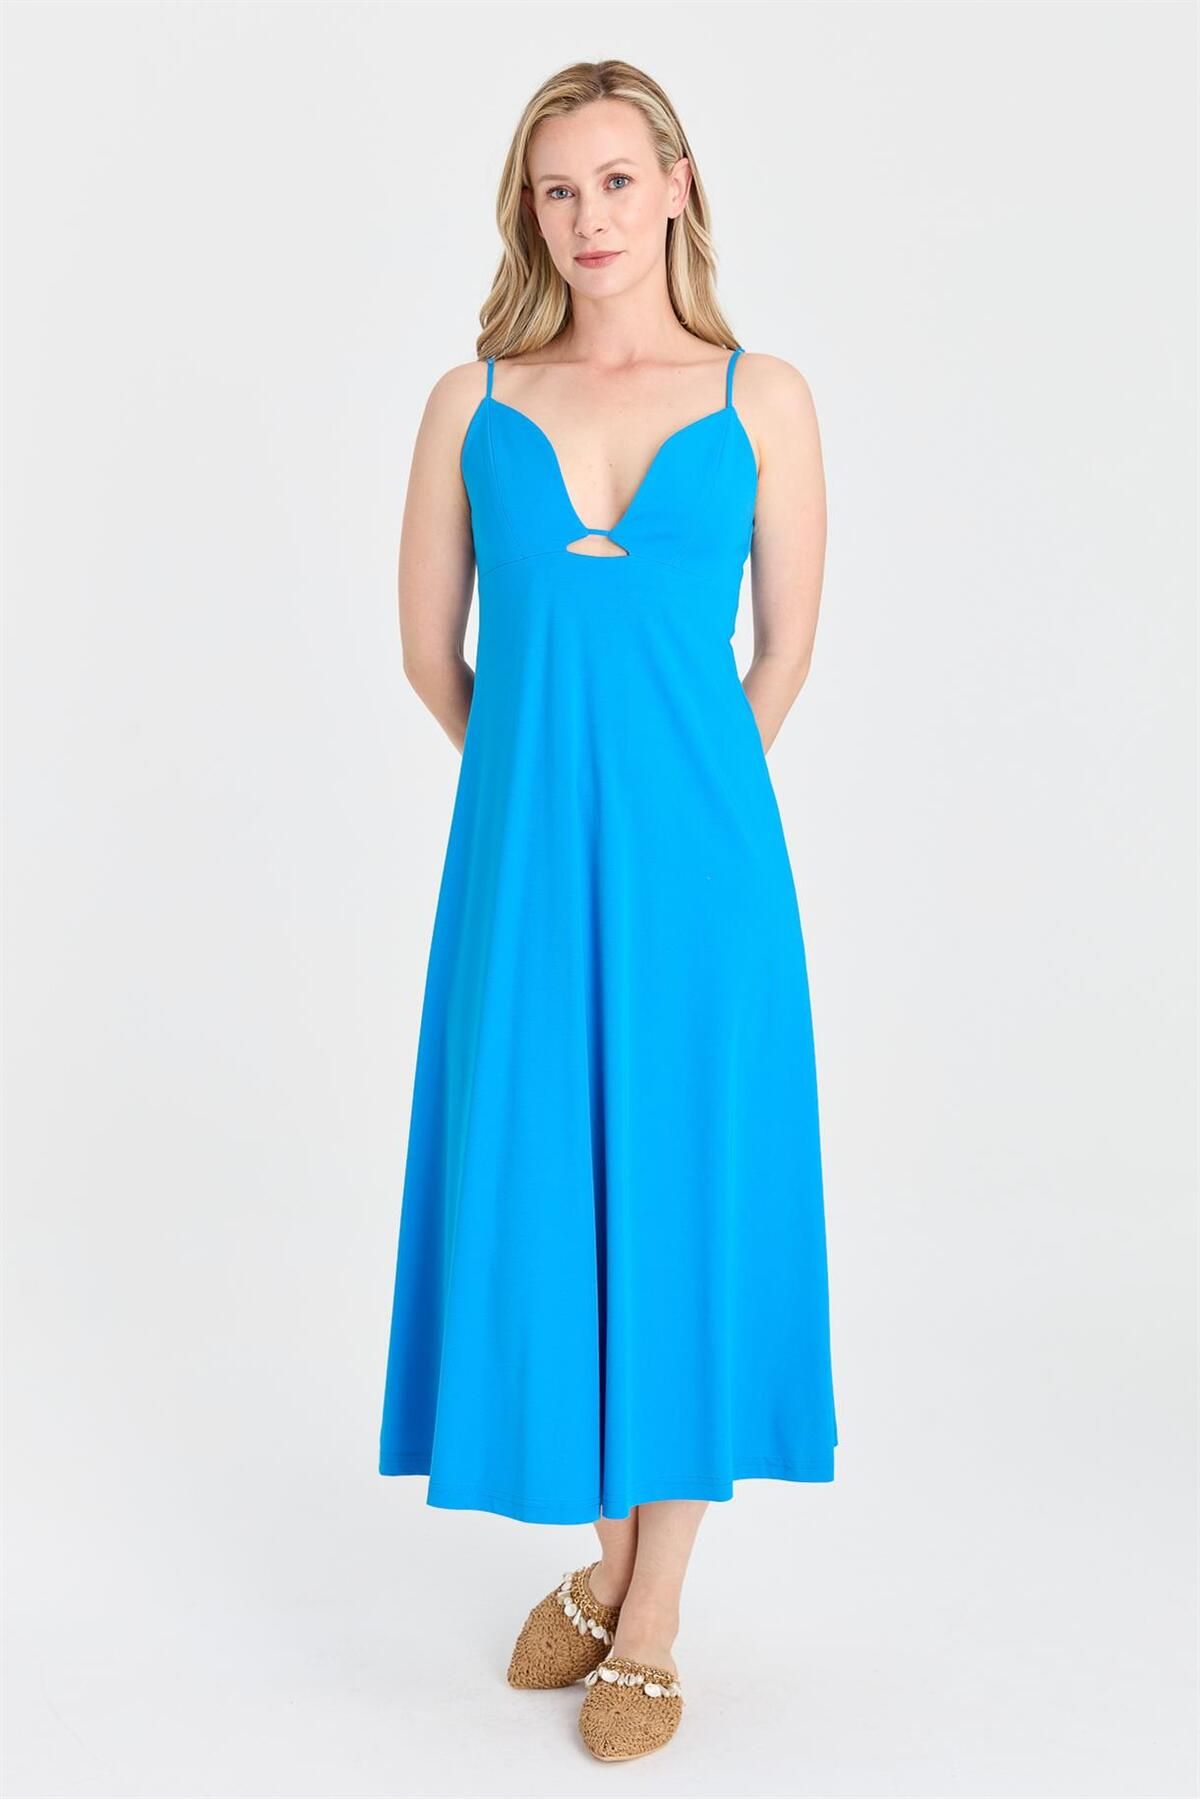 accort S5-601 Örme Elbise - Mavi